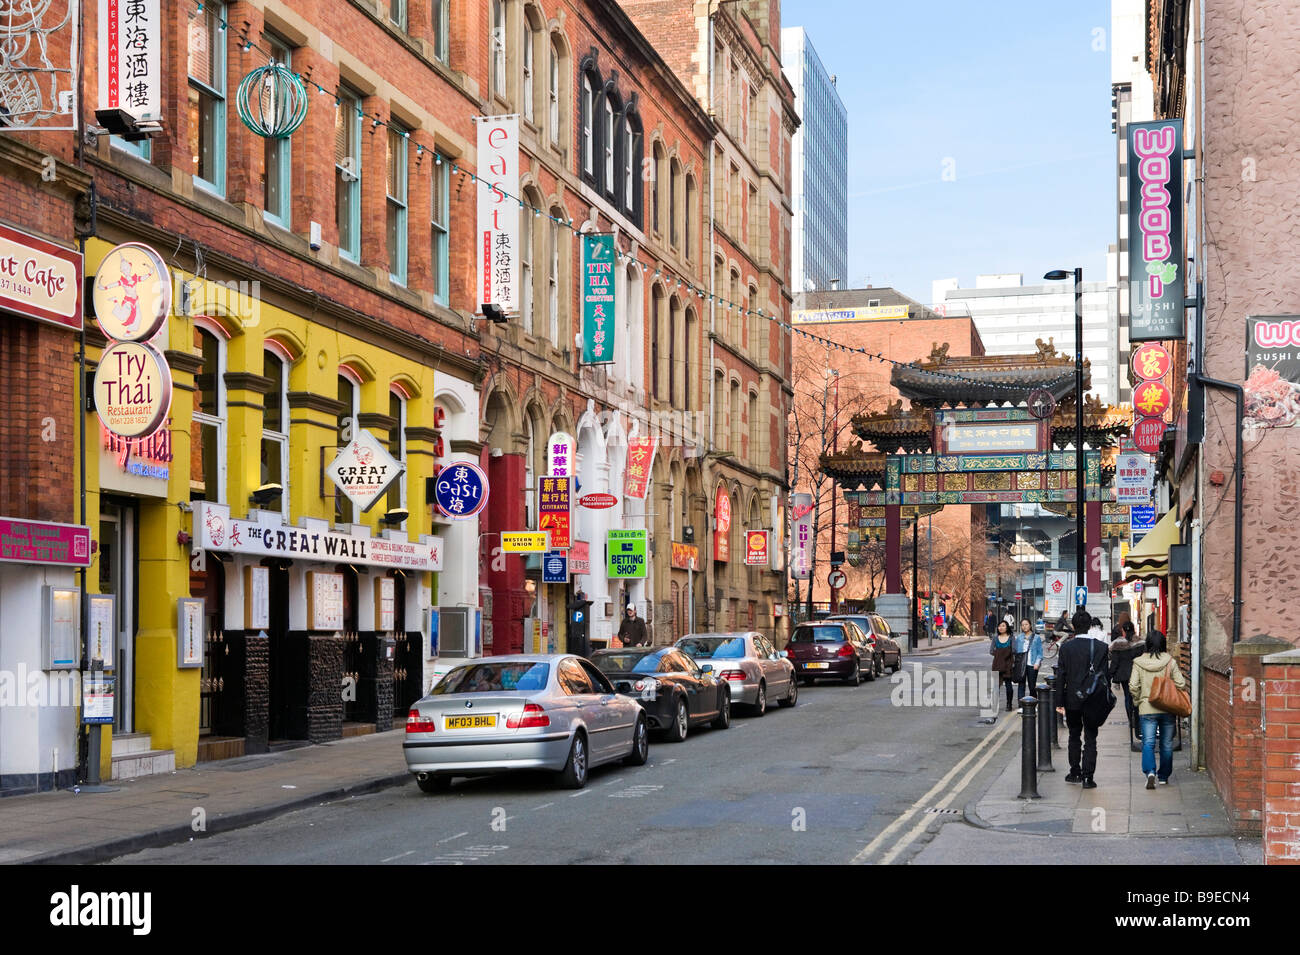 Les restaurants orientaux sur Faulkner Street dans le quartier chinois, Manchester, Angleterre Banque D'Images